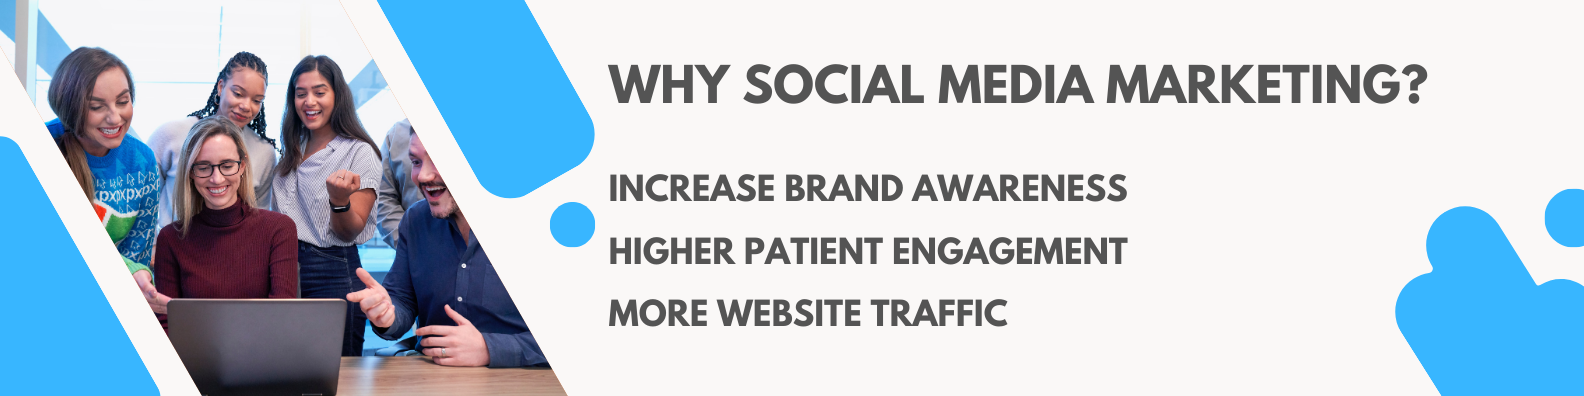 social media marketing for dentist and dental clinics